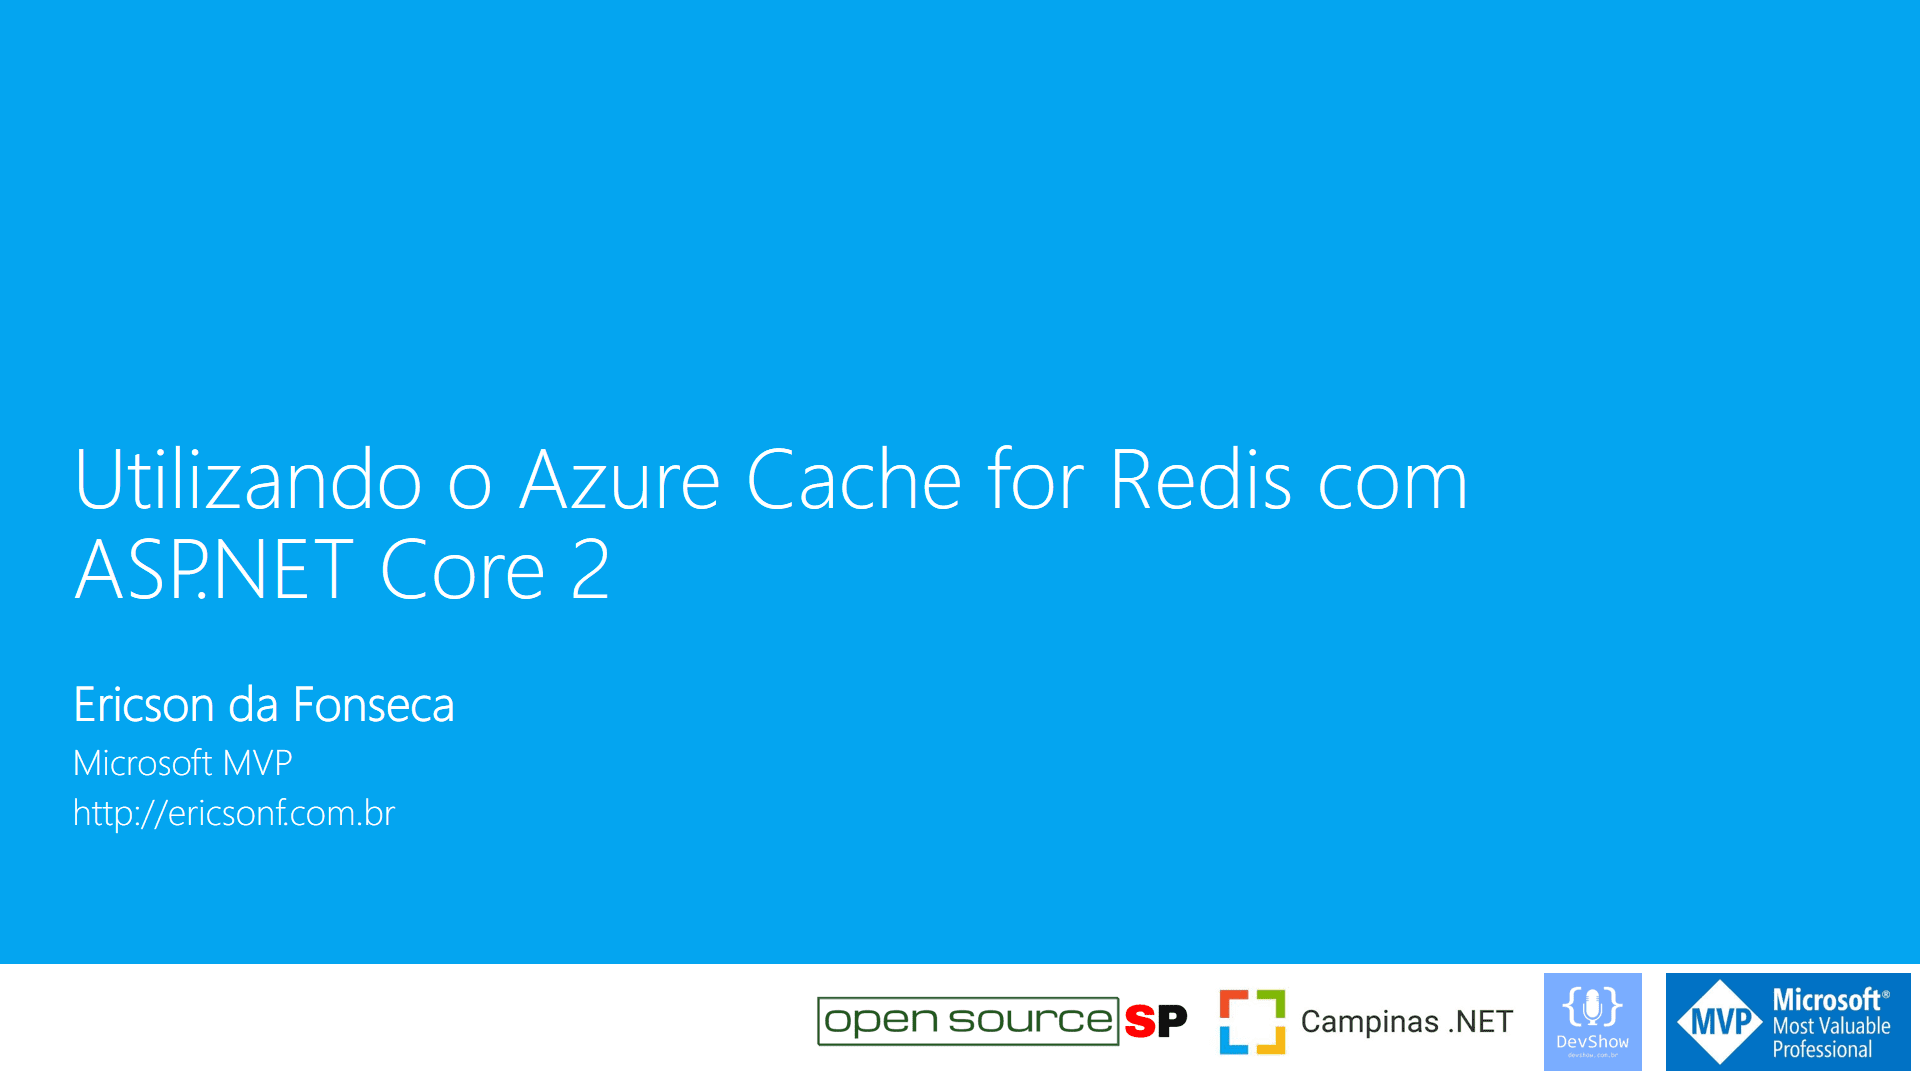 Utilizado o Azure Cache for Redis com ASP.NET Core 2